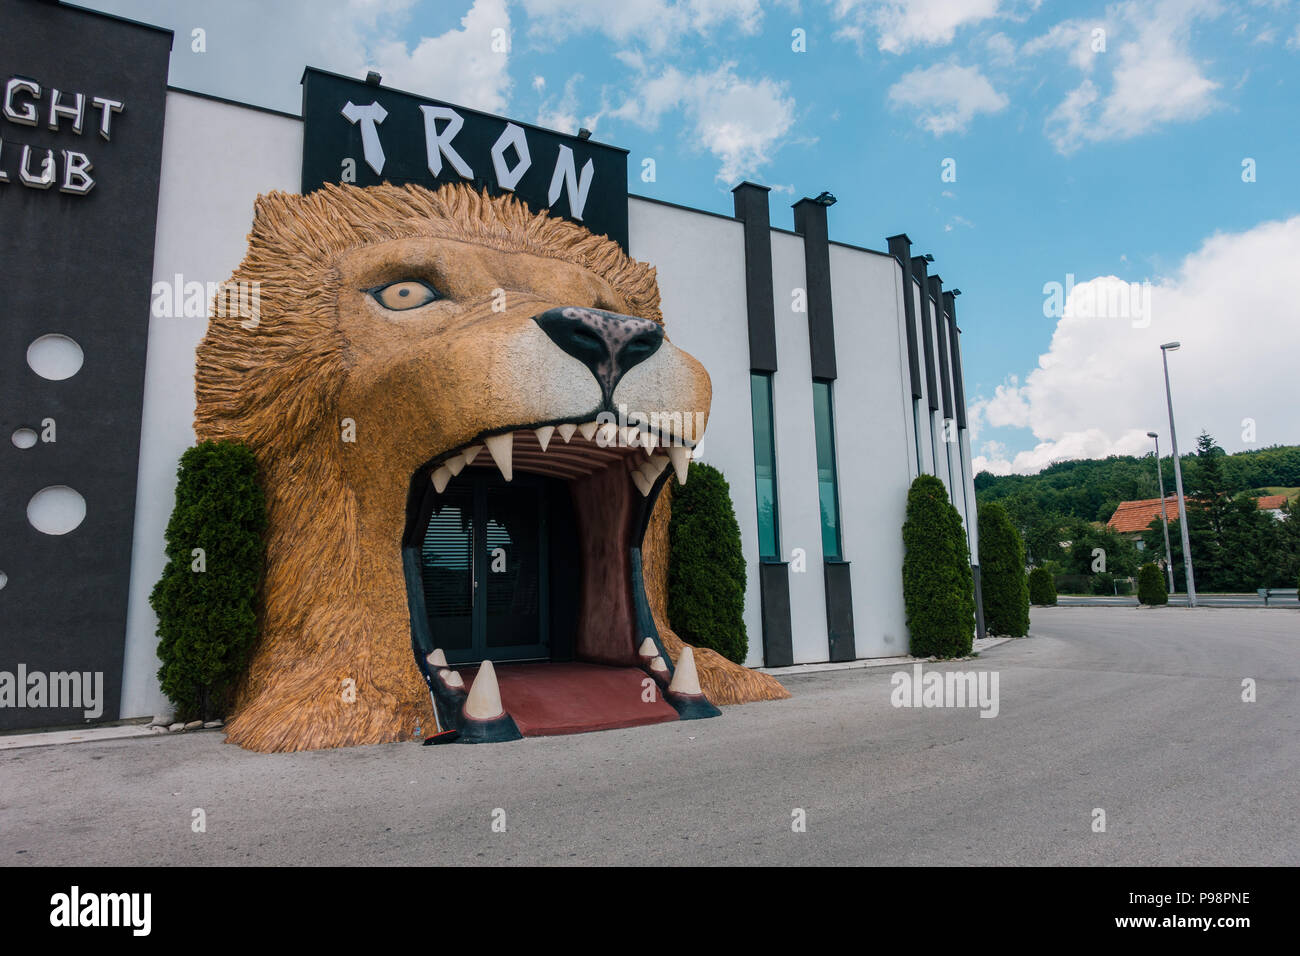 Ein riesiger Löwenkopf dient als Eingang zum Tron Nachtclub am Stadtrand von Travnik, Bosnien und Herzegowina Stockfoto